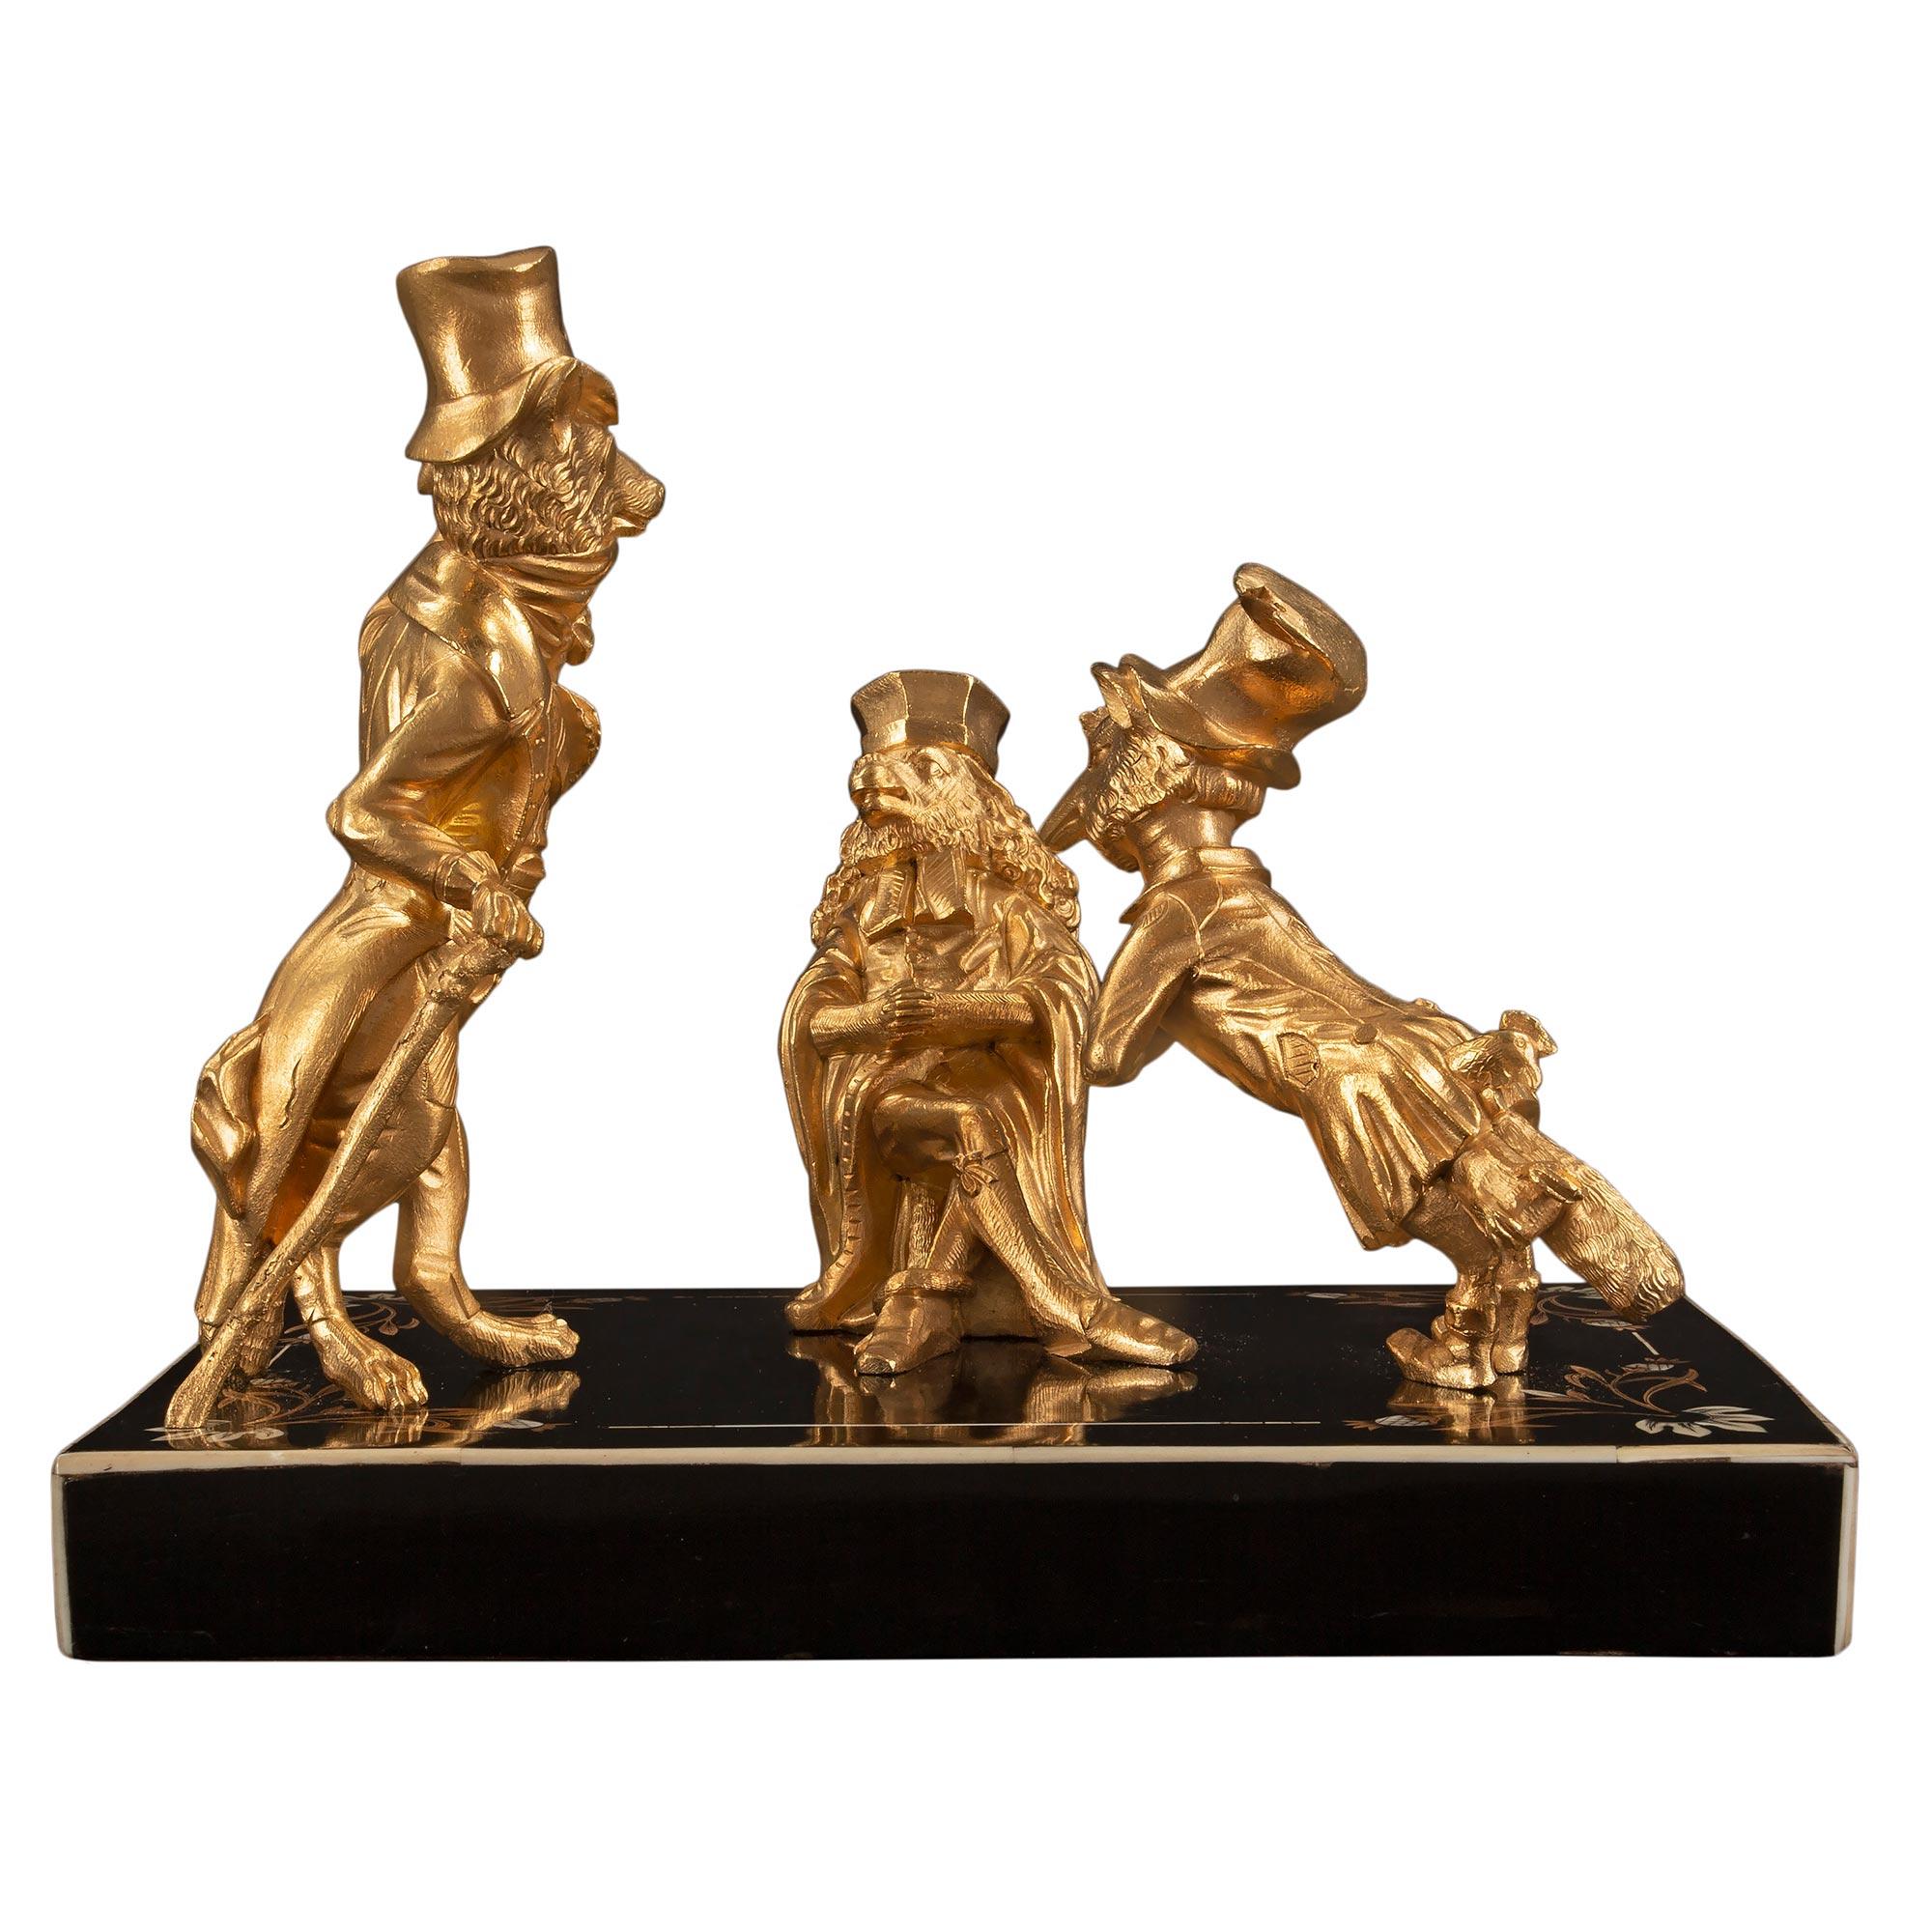 Charmant groupe de statues en bronze doré d'époque Louis XVI et Napoléon III, datant du XIXe siècle, représentant la fable de Jean de la Fontaine 